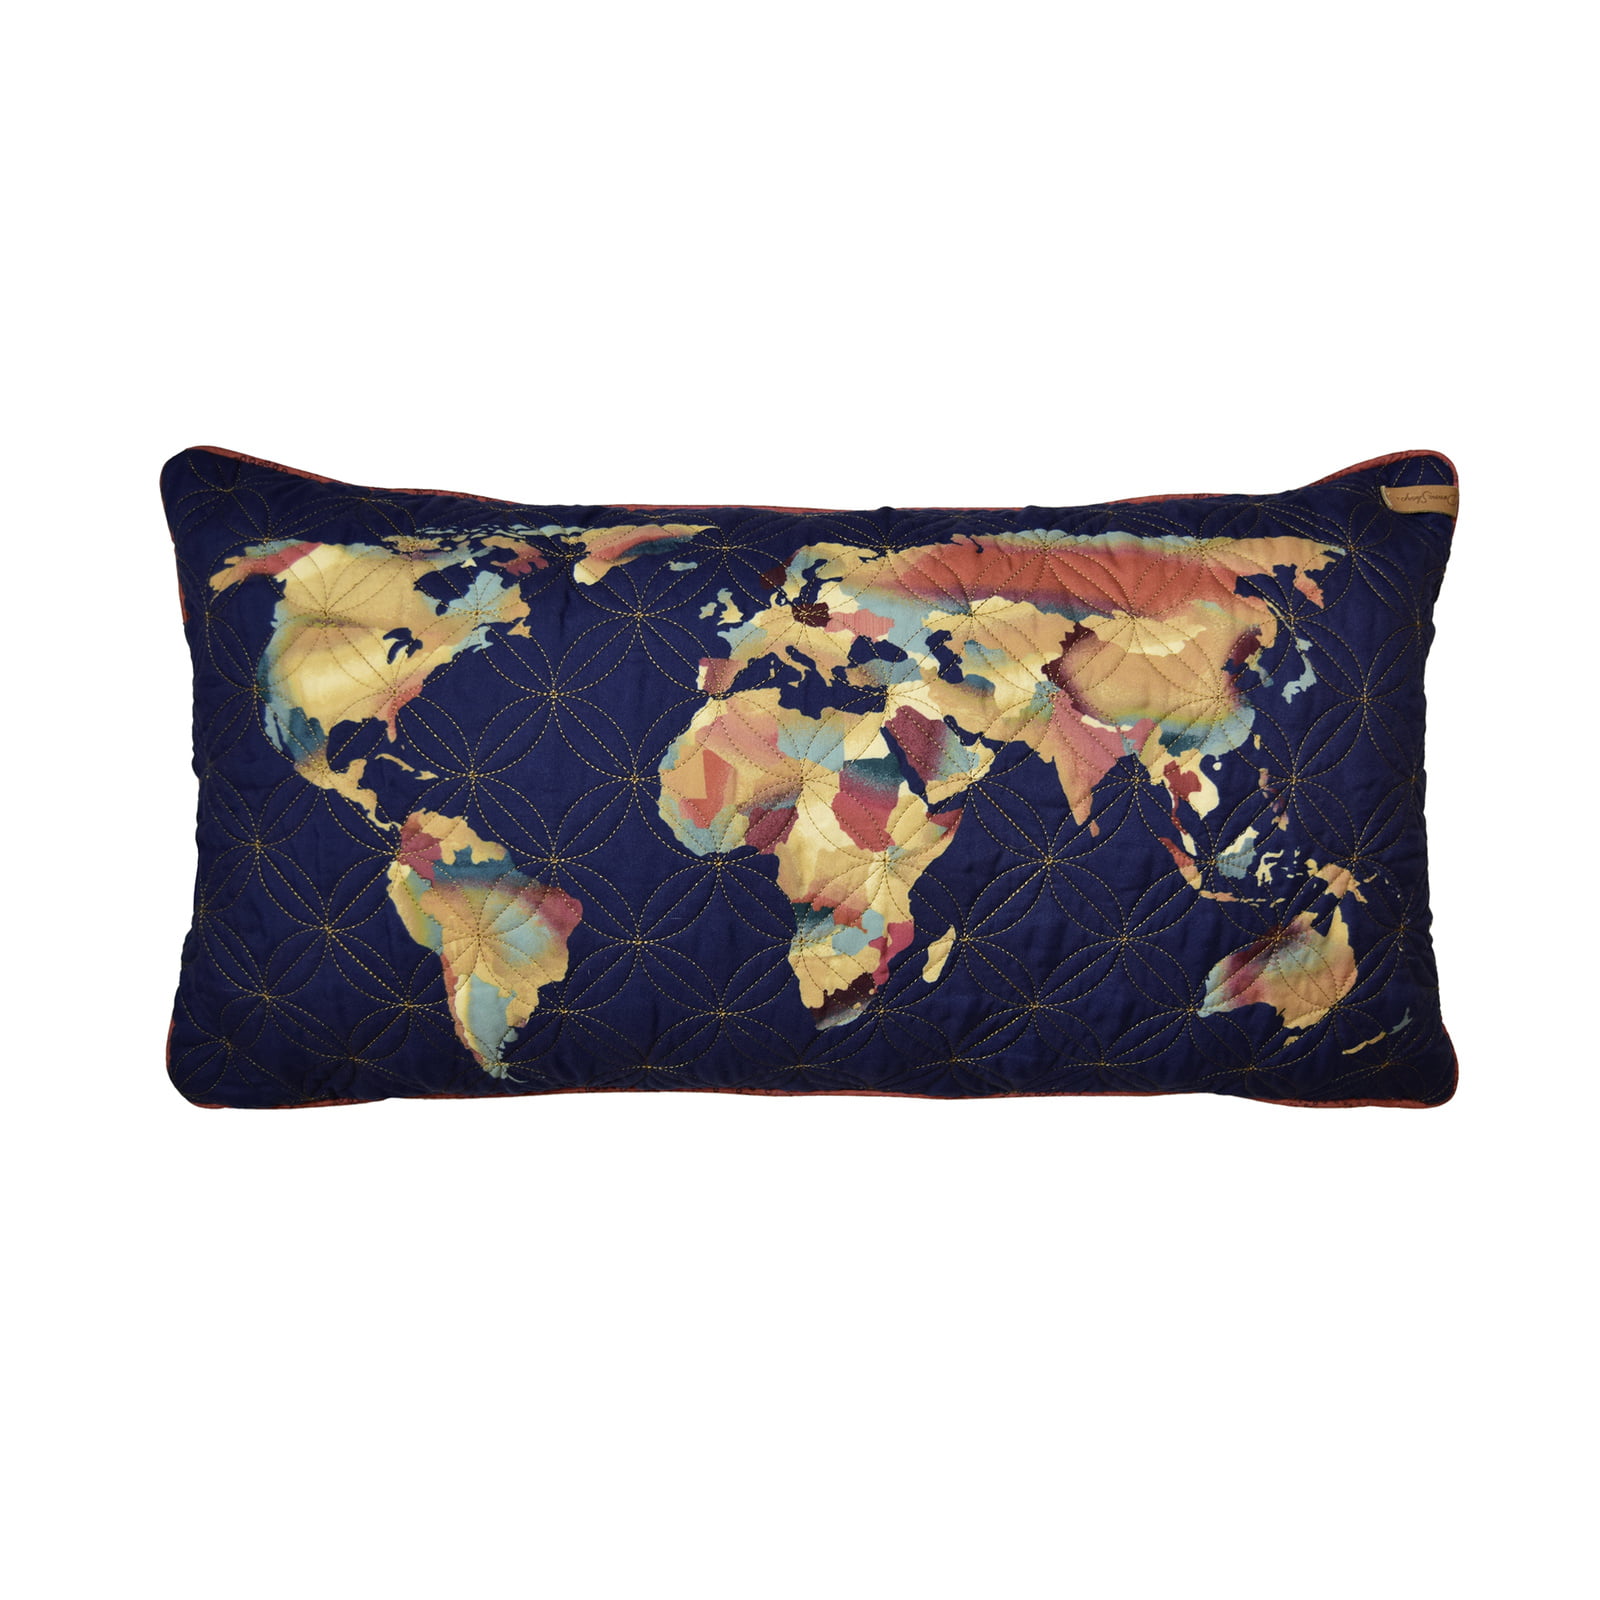 52063 11 X 22 In. Cinnamon Spice World Map Decorative Pillow, Multi Color